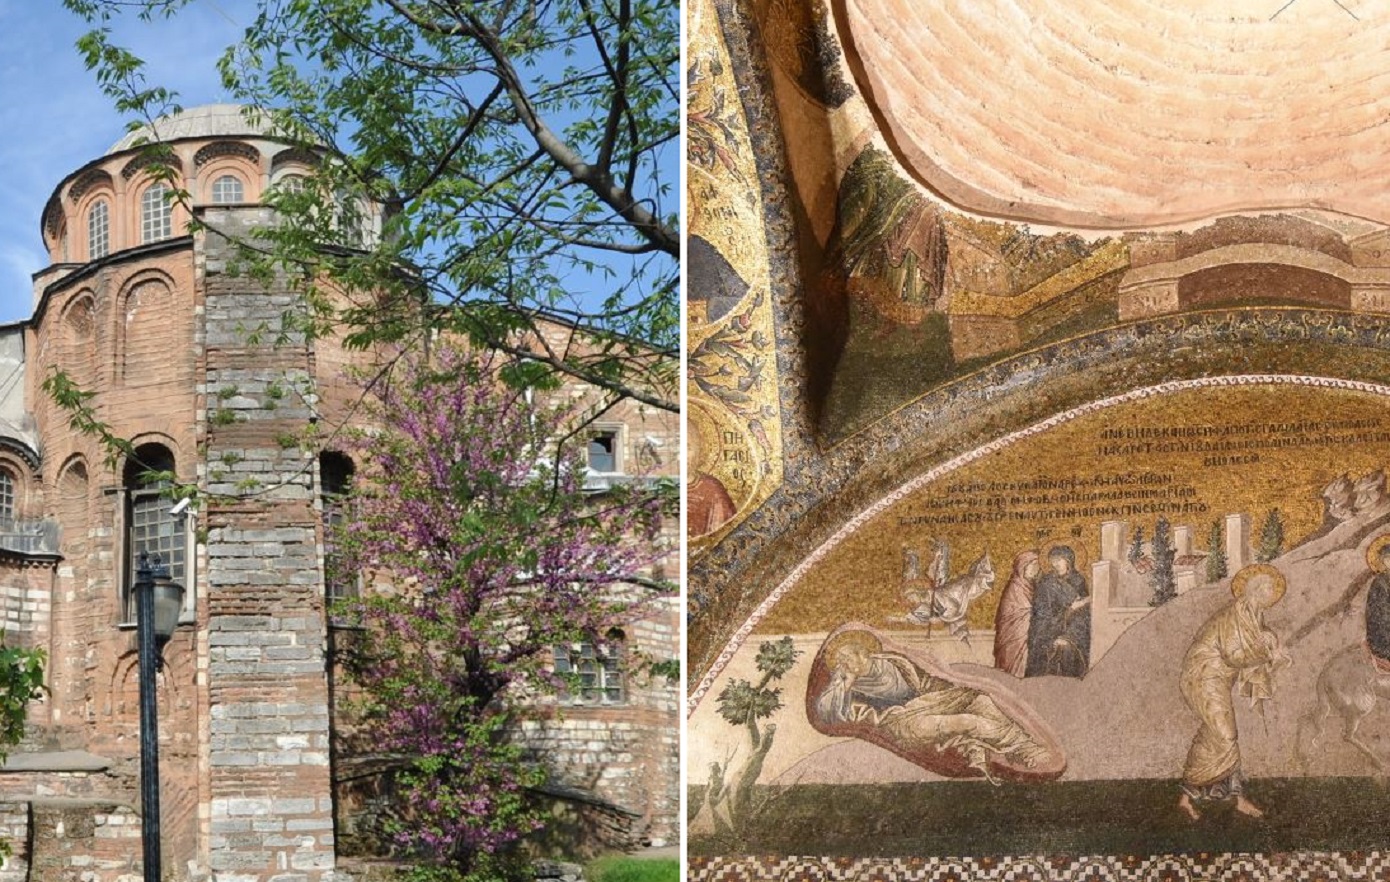 Μονή της Χώρας: Ο βυζαντινός ναός με τα πανέμορφα χριστιανικά ψηφιδωτά που έκανε τζαμί ο Ερντογάν